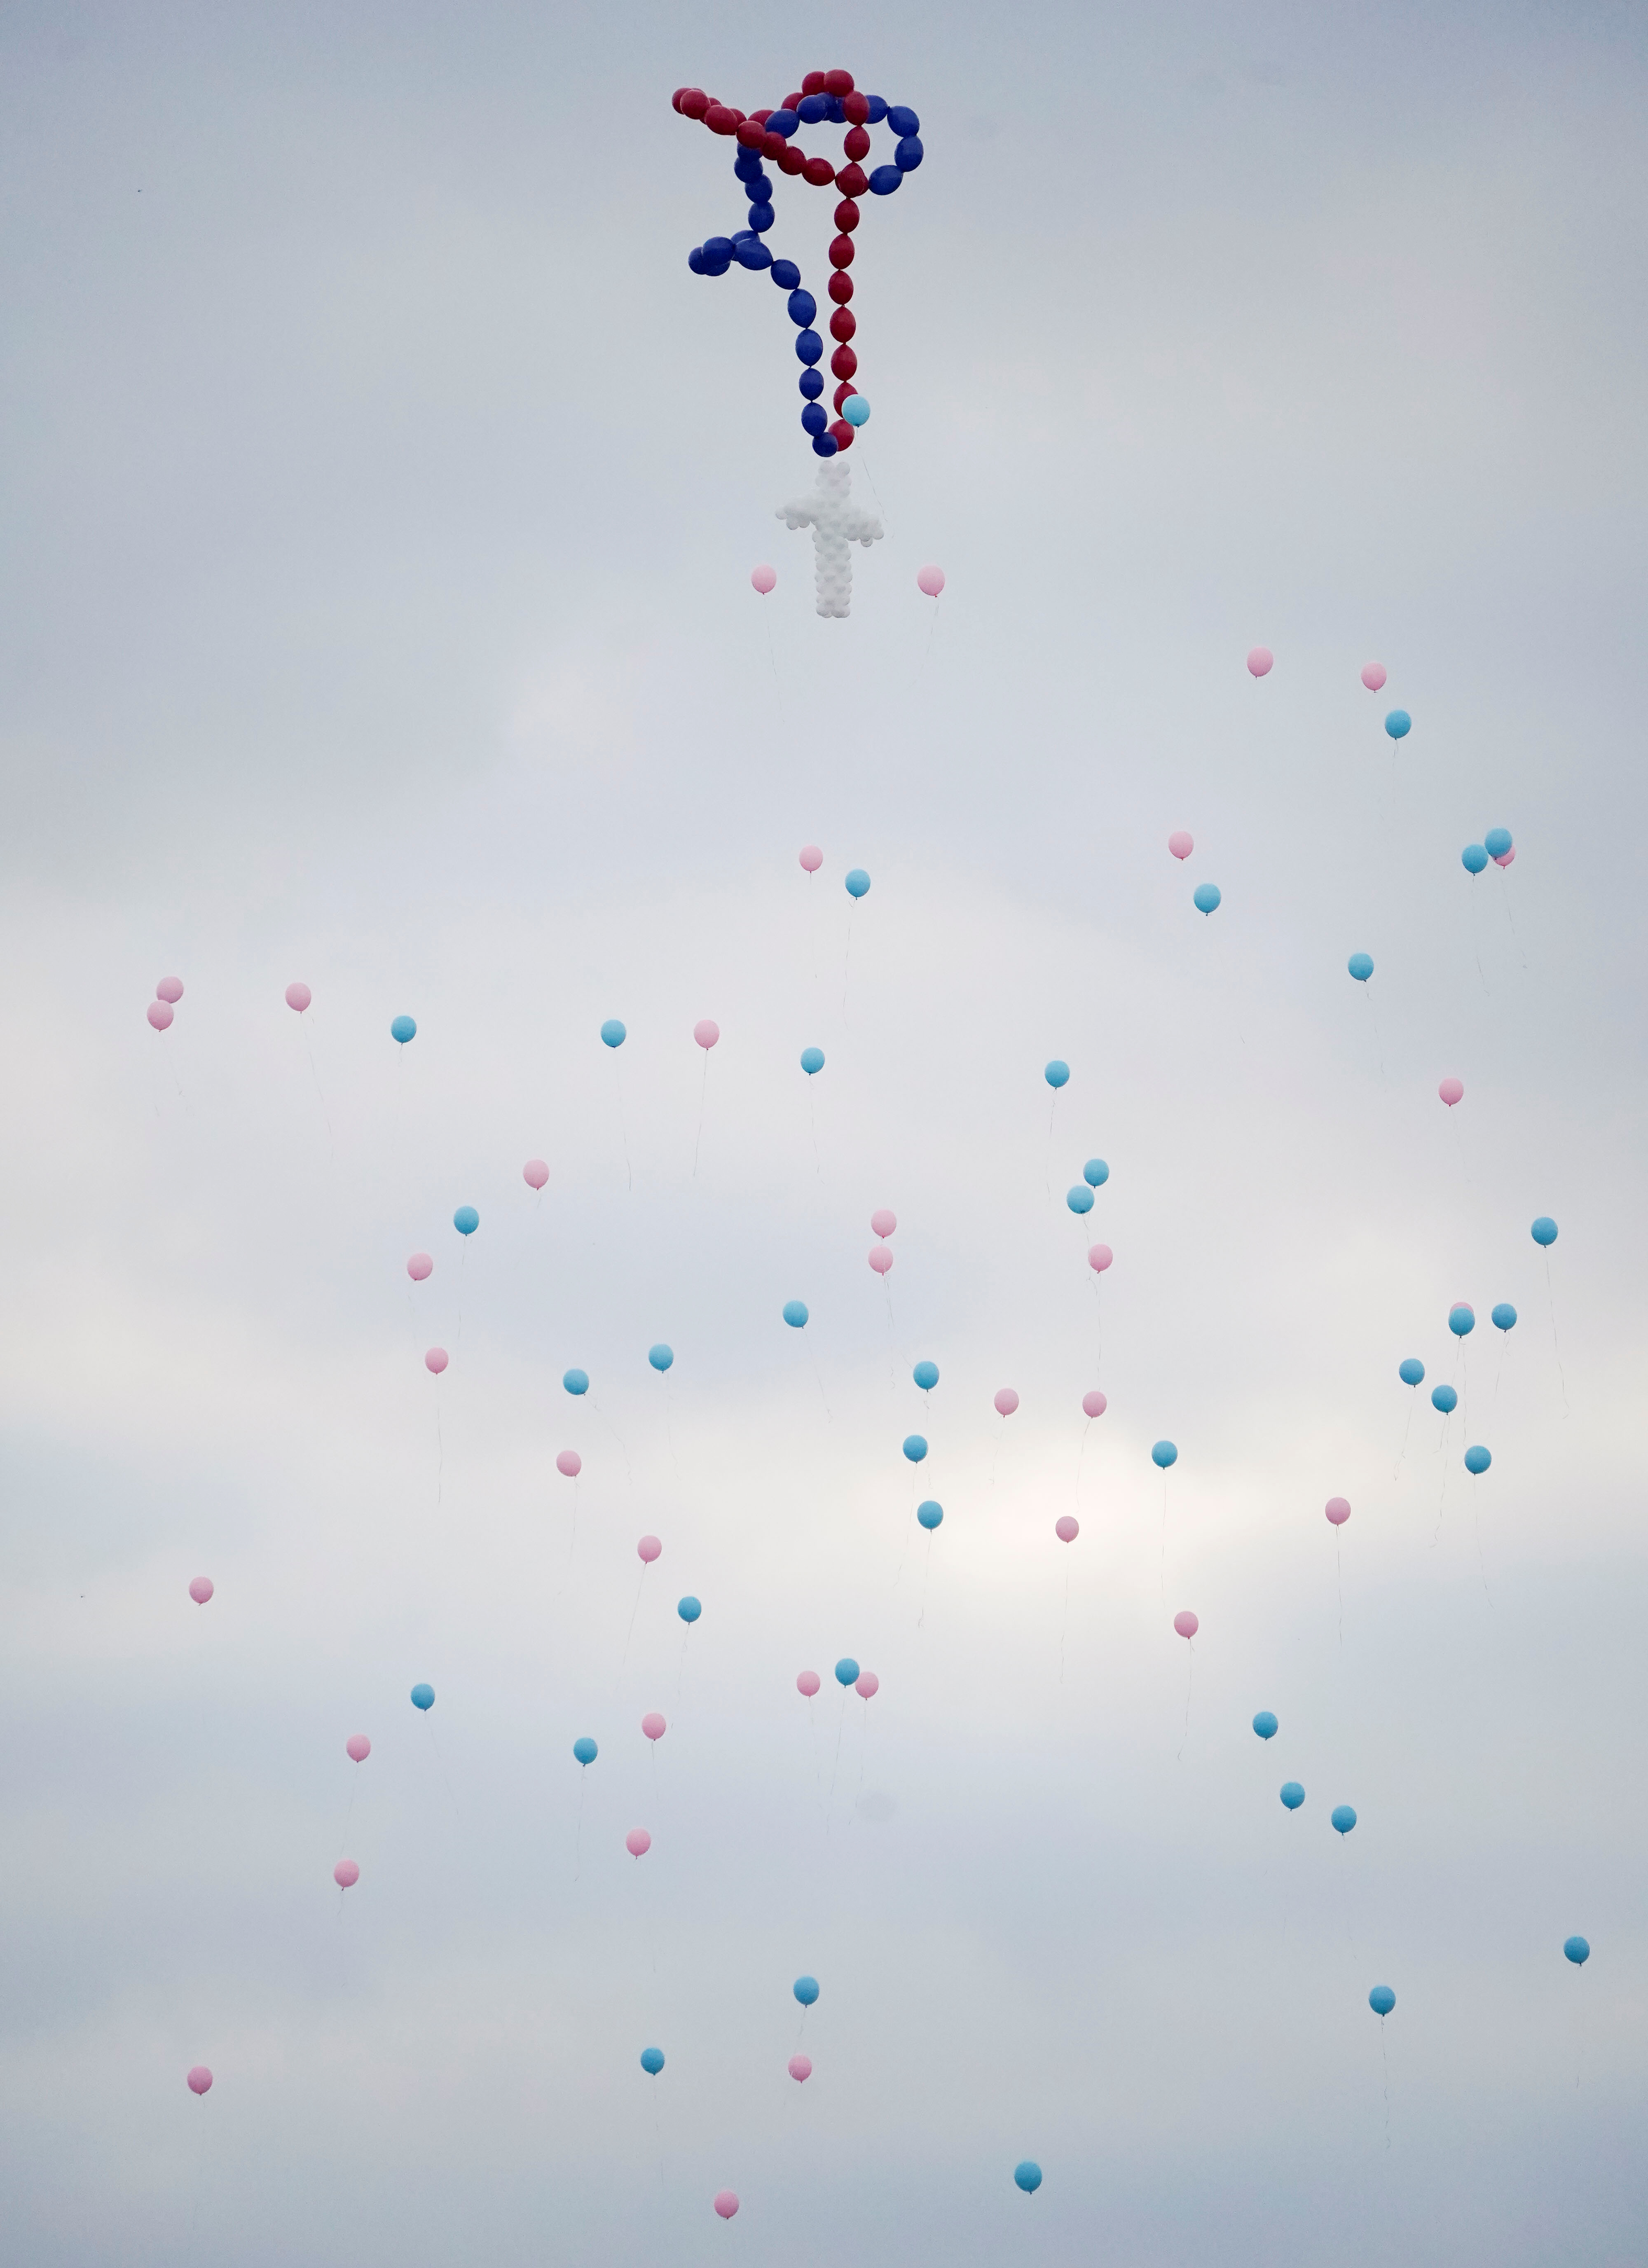 اطلاق البالونات فى الهواء